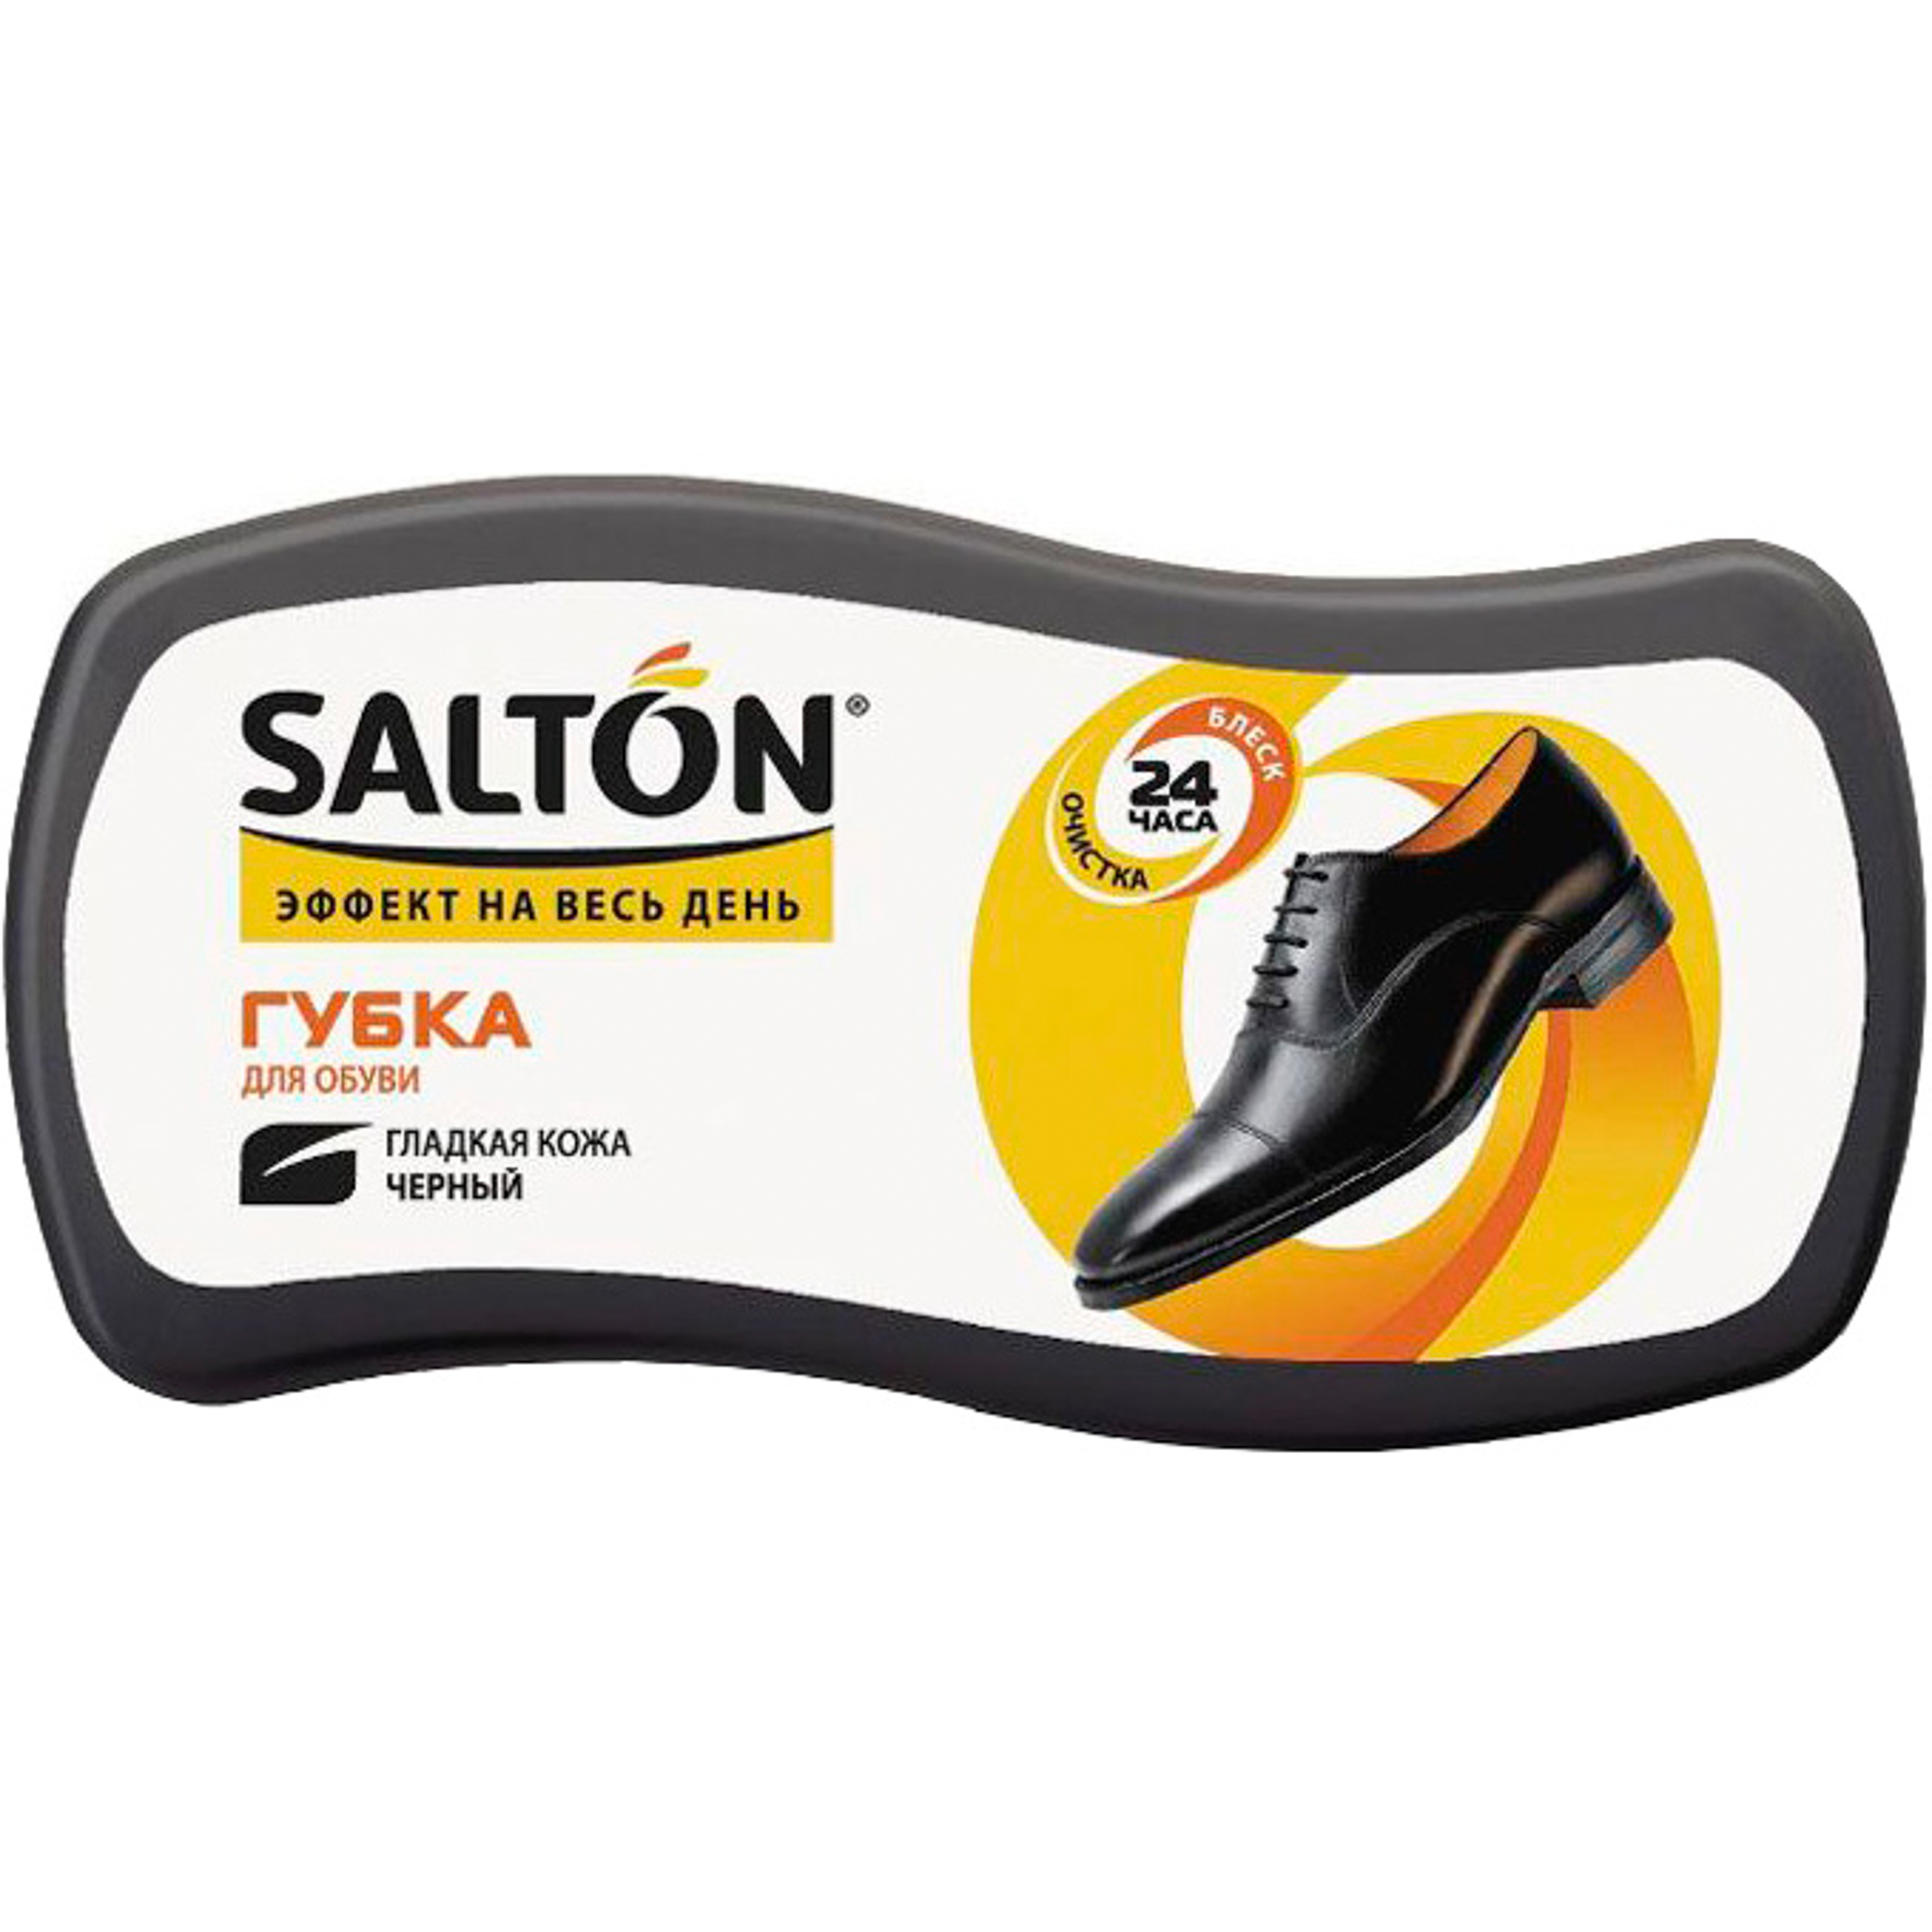 Губка Salton Волна для обуви из гладкой кожи 52/09 губка для обуви из гладкой кожи salton волна миди бесцветная